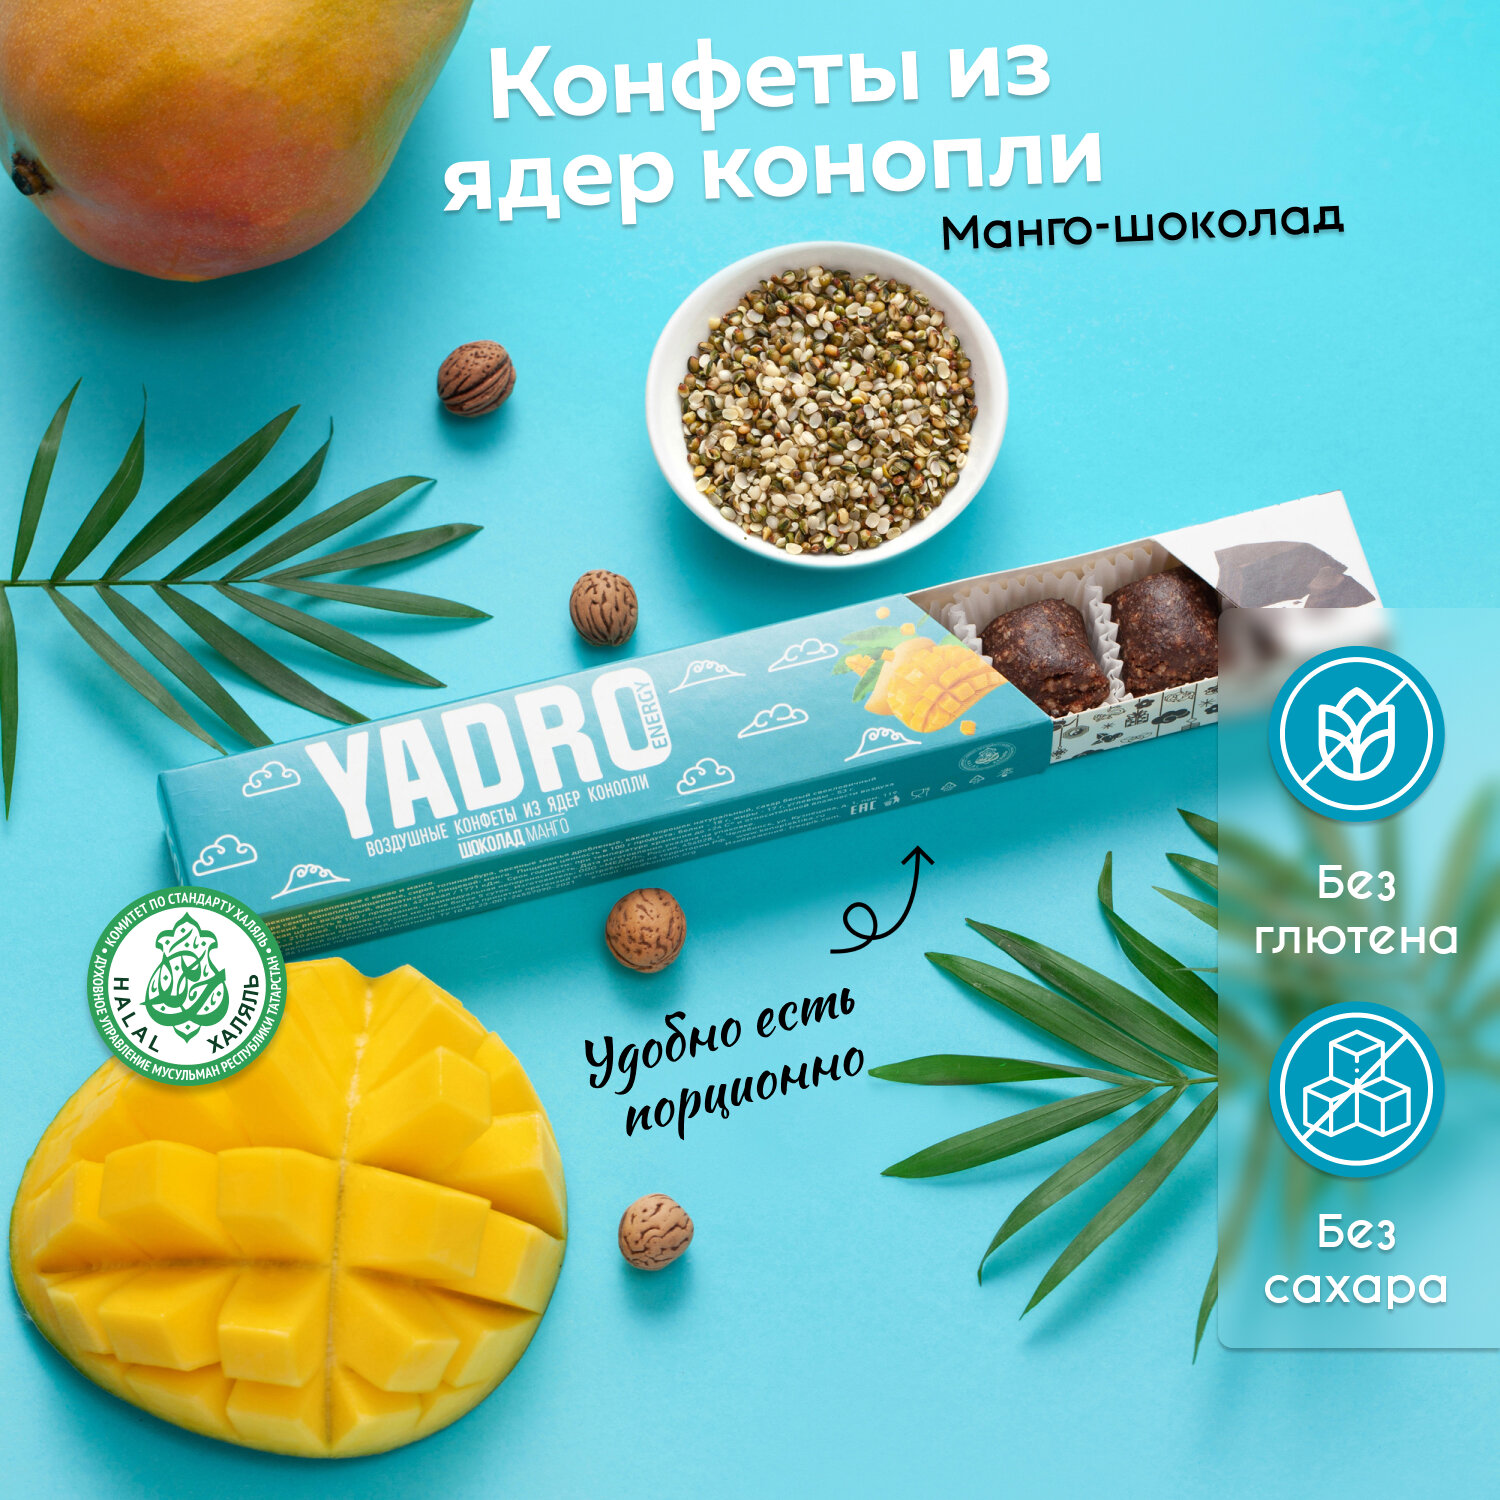 Конфеты из ядер конопли YADRO Energy Манго Шоколад